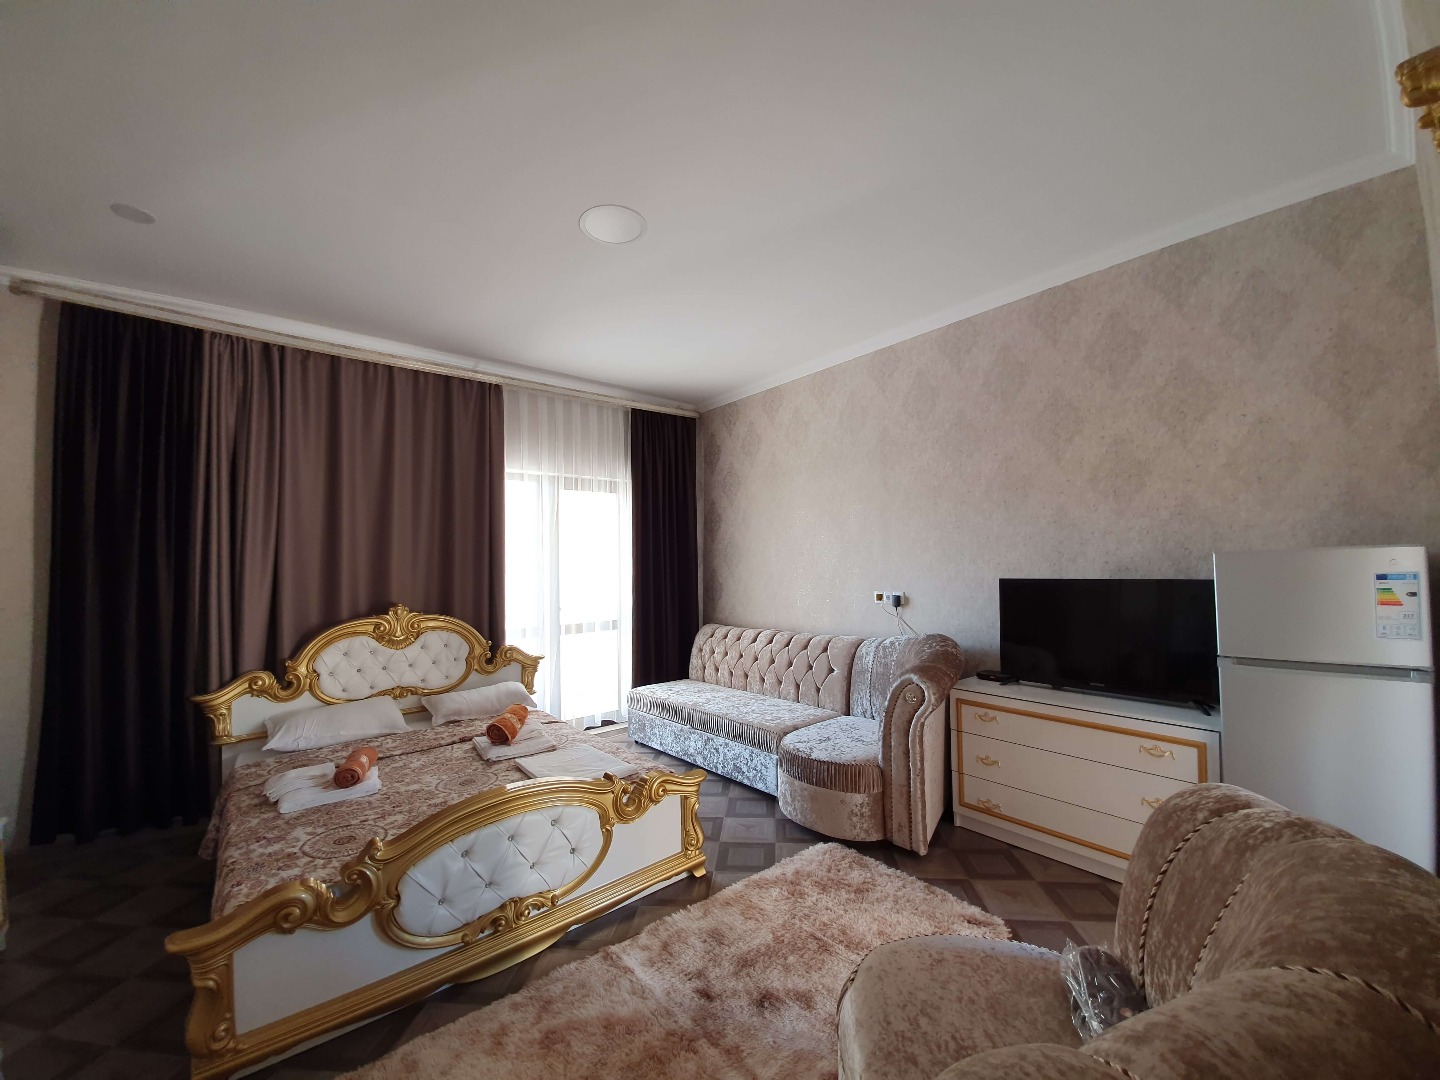 Suite 1 комнатный - Limpopo Travel в России